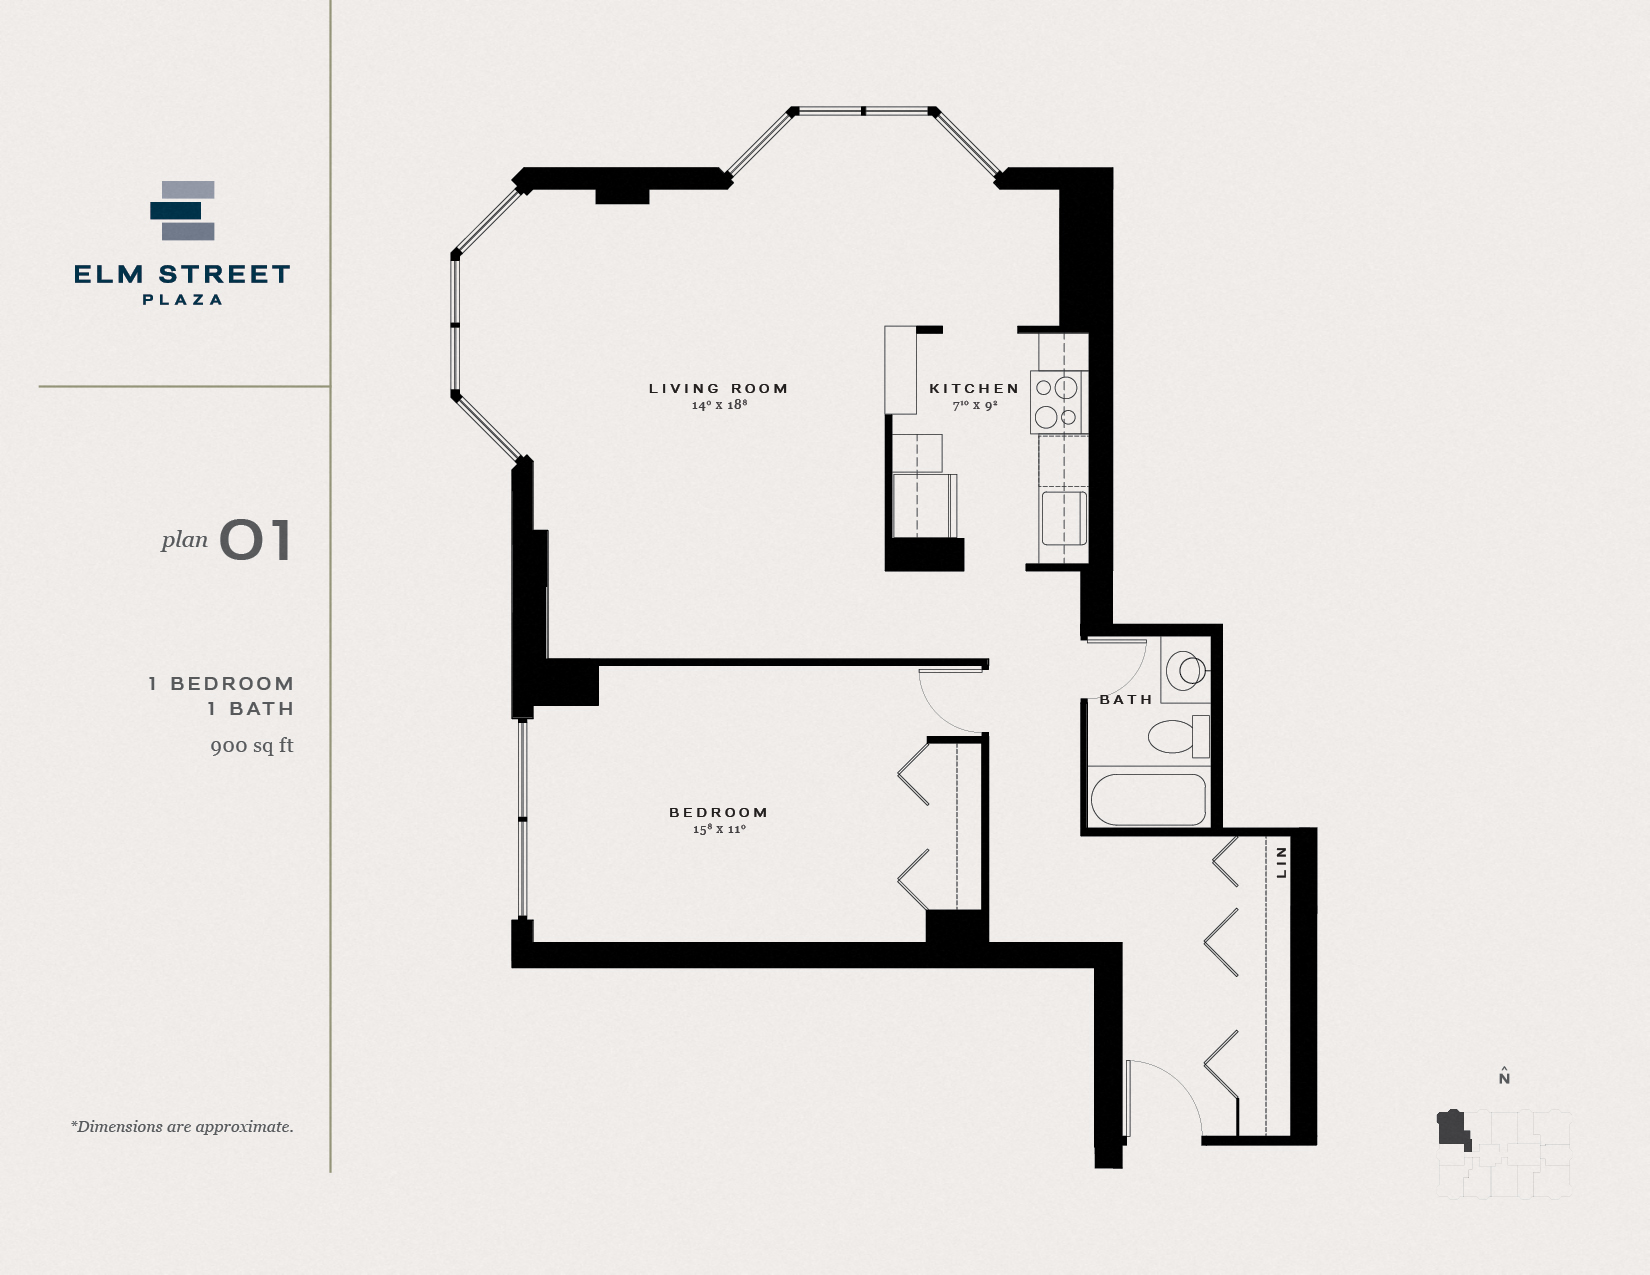 Studio, 1 & 2 Bedroom Gold Coast Apartments for Rent Elm